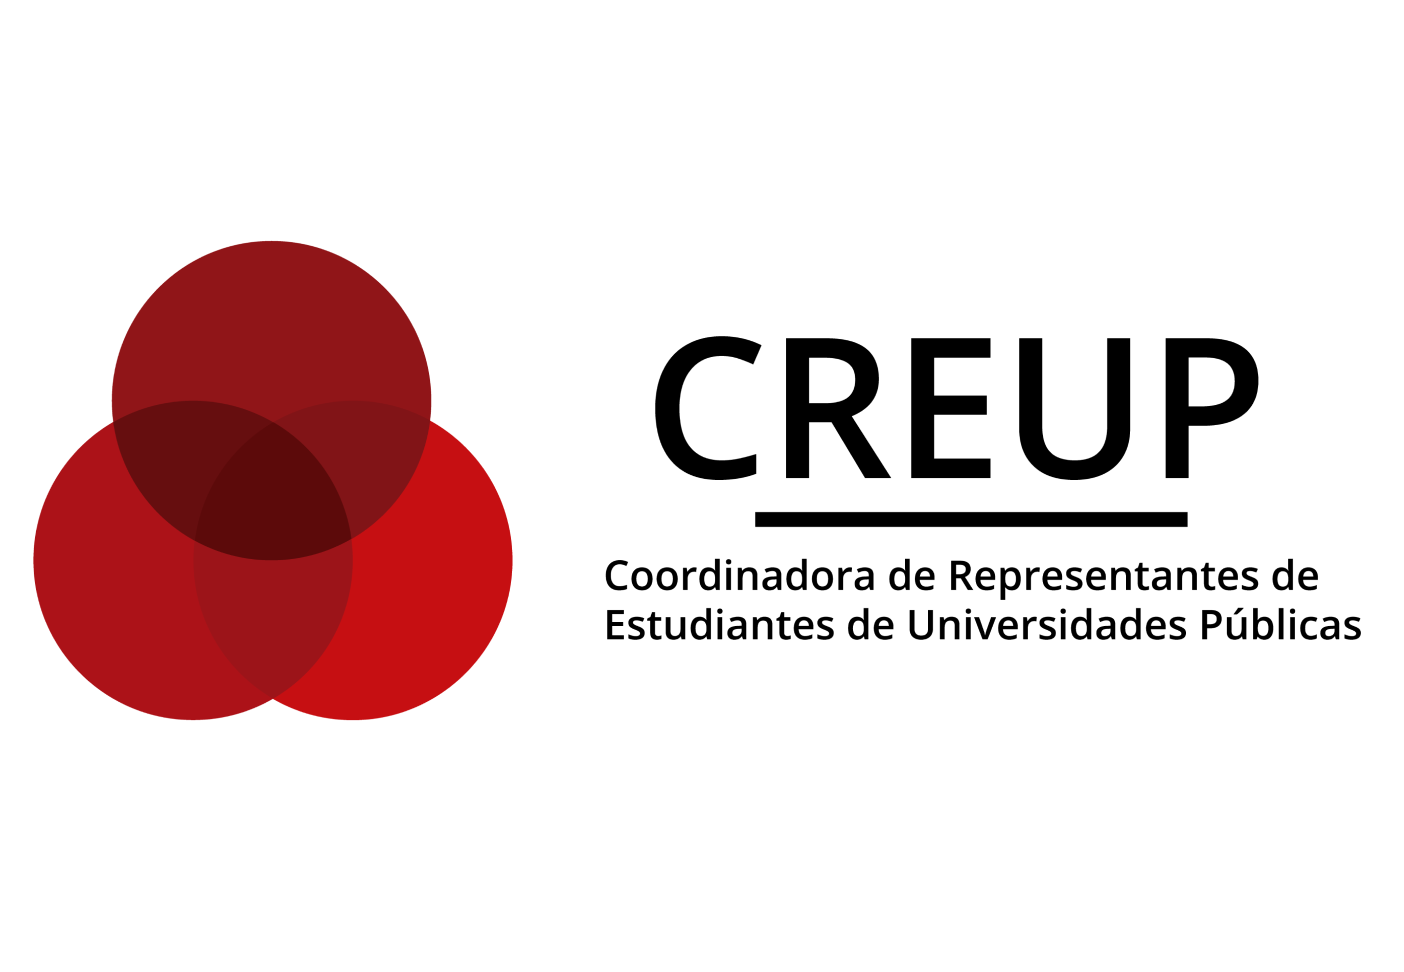 Spain – CREUP – Public Universities’ Students Union